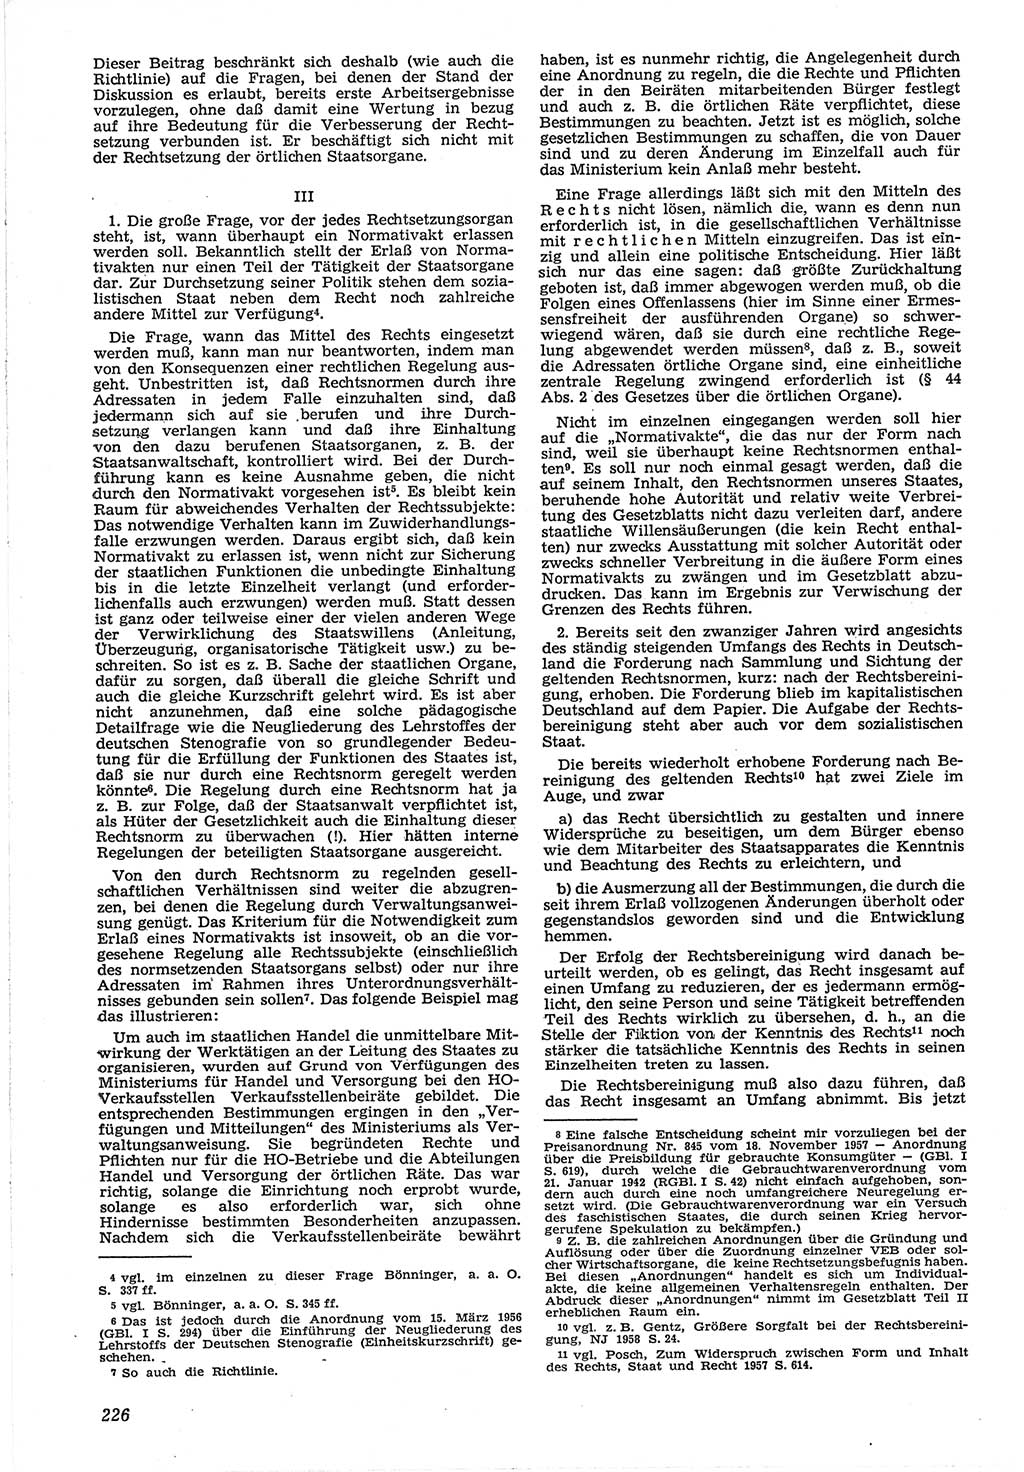 Neue Justiz (NJ), Zeitschrift für Recht und Rechtswissenschaft [Deutsche Demokratische Republik (DDR)], 12. Jahrgang 1958, Seite 226 (NJ DDR 1958, S. 226)